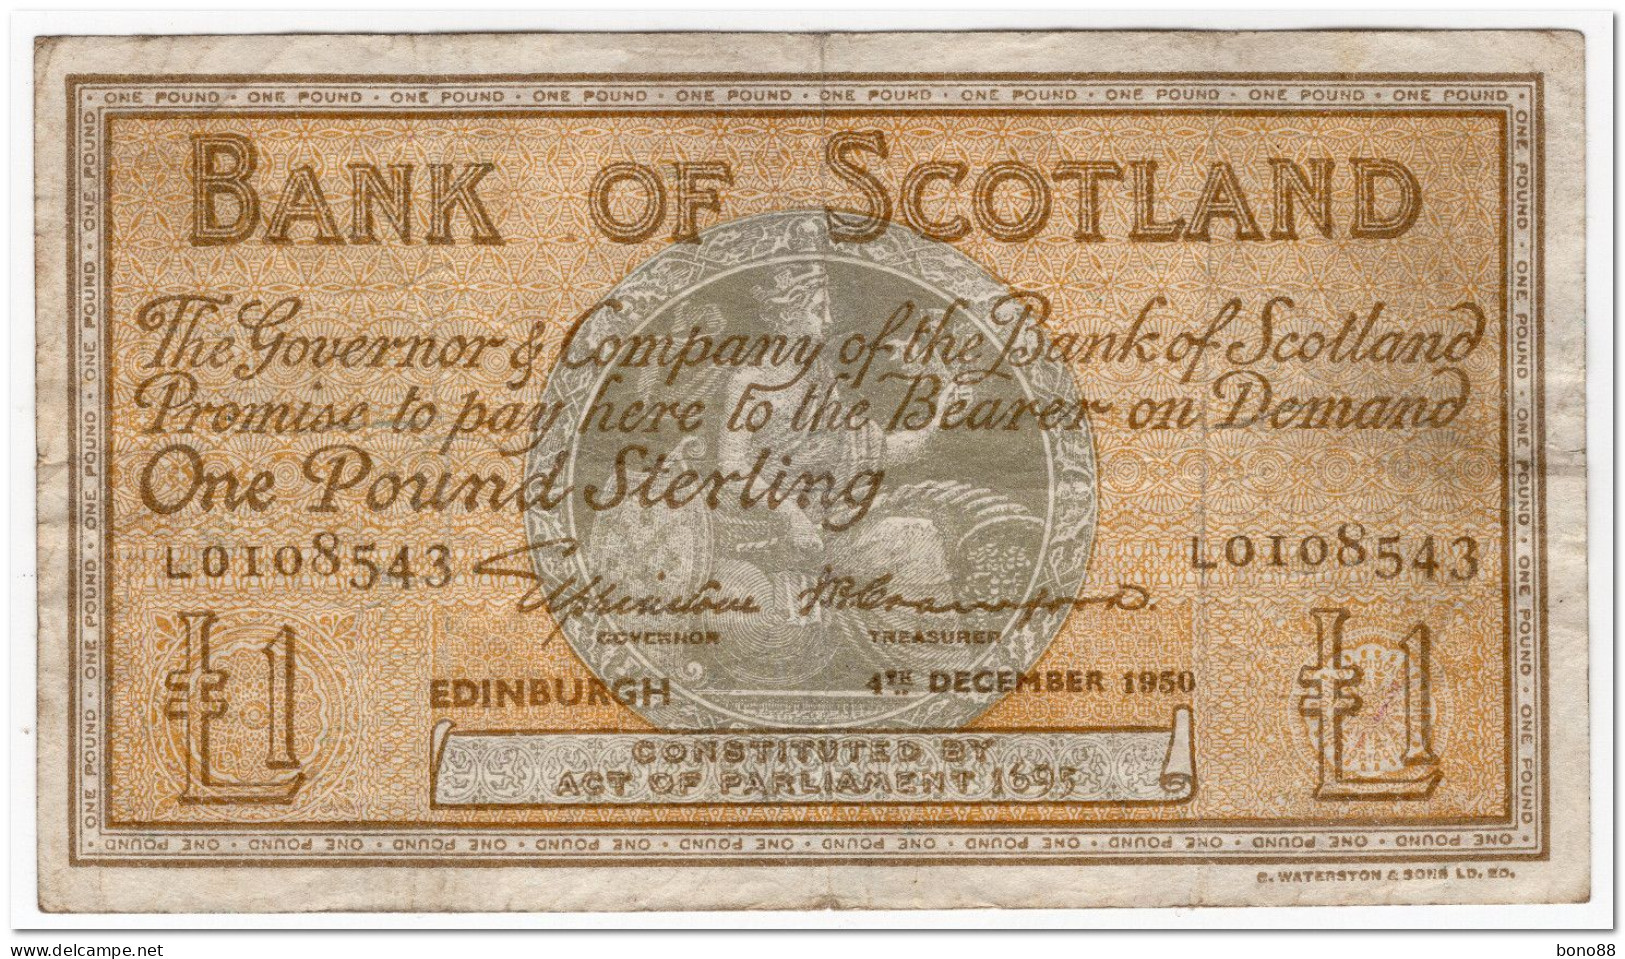 SCOTLAND,BANK OF SCOTLAND,1 POUND,1950,P.96b,FINE - 1 Pound